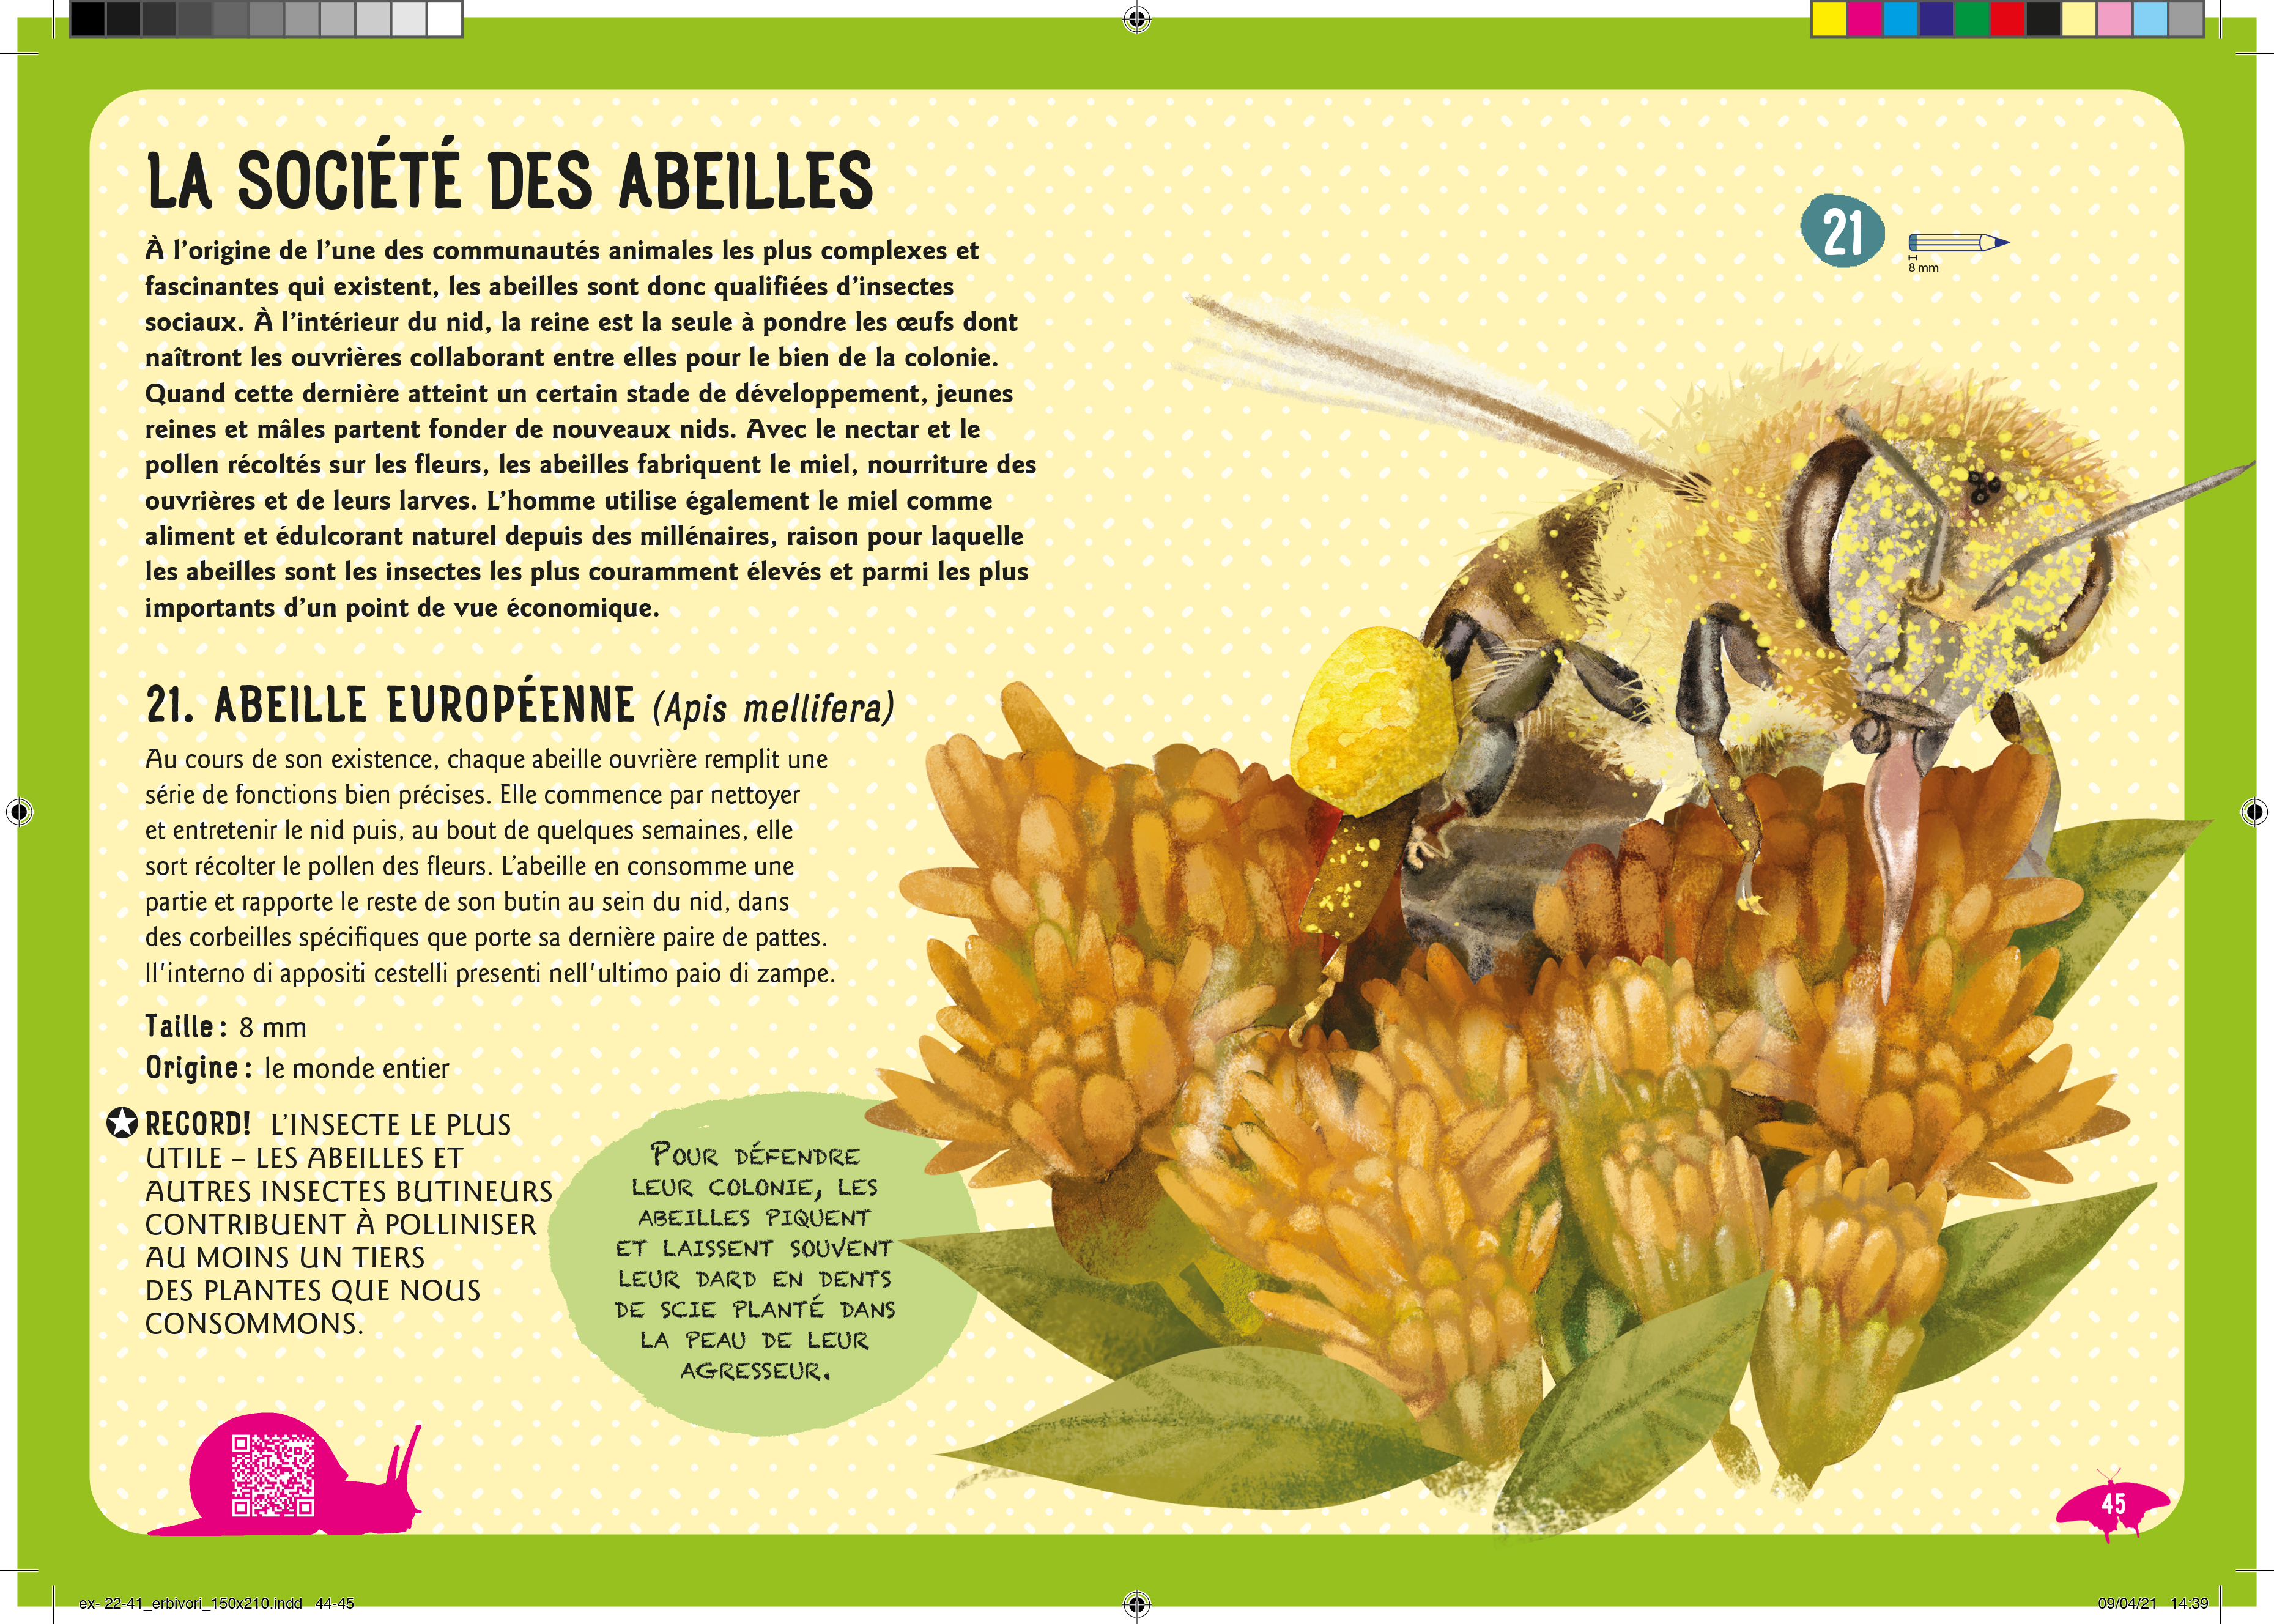 Guide Des Insectes Du Monde : Et Autres Invertebres